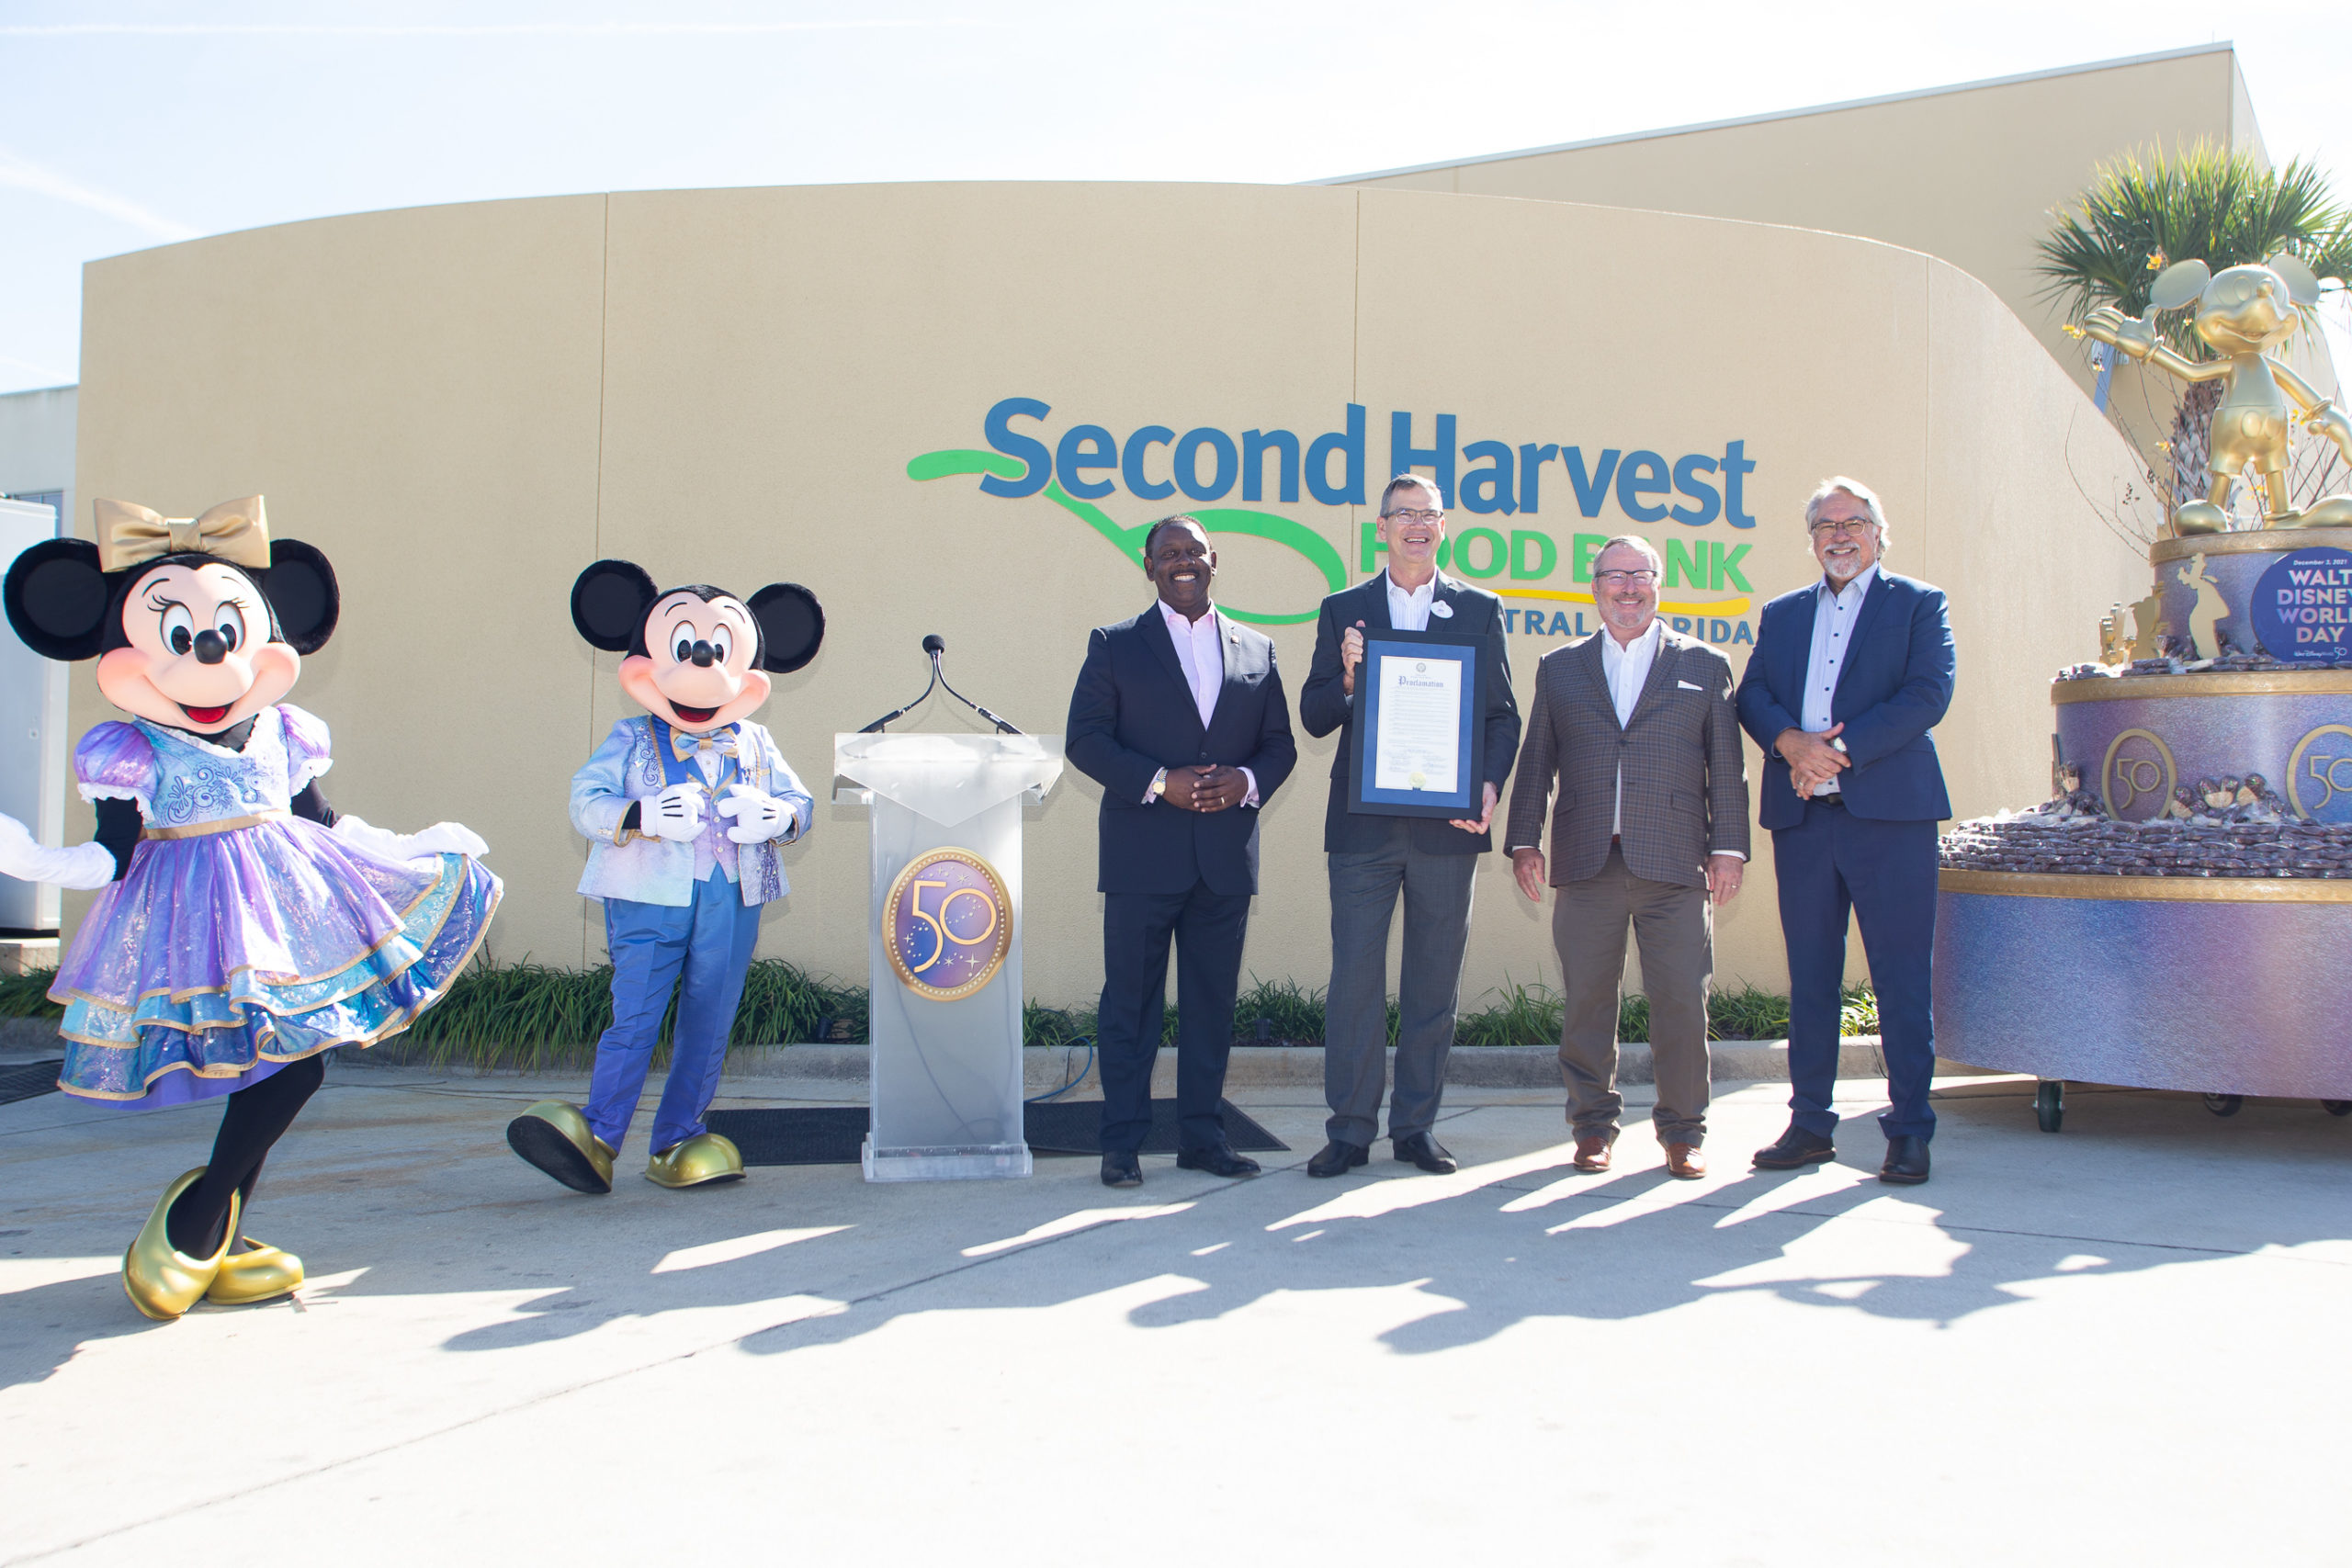 El Gobierno del Condado de Orange y la Ciudad de Orlando declararon el 3 de diciembre de 2021 como el "Día de Walt Disney World" con motivo del 50.° aniversario del Walt Disney World Resort en Florida Central.